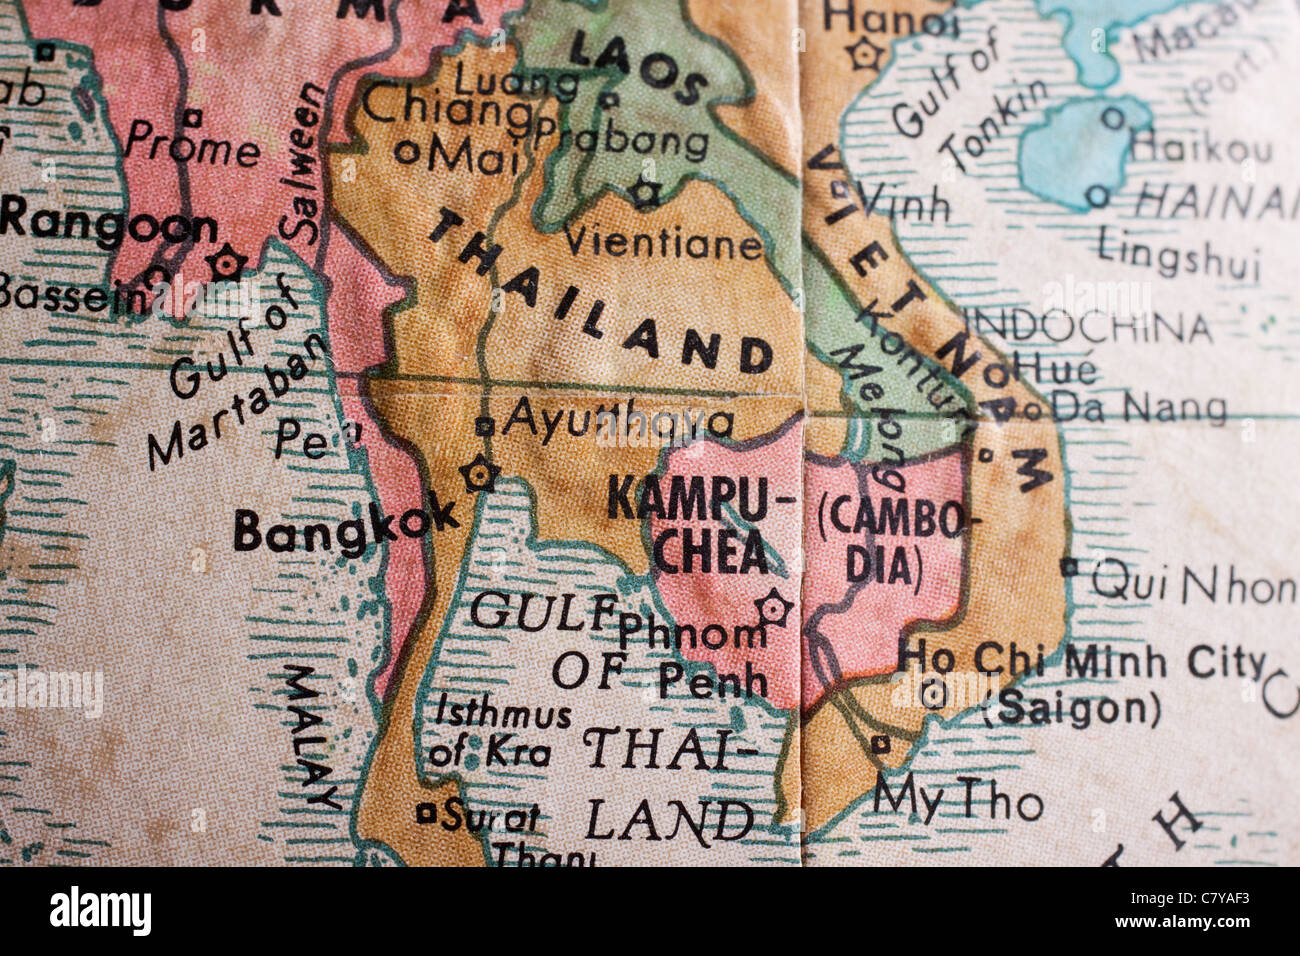 La carte du sud-est de l'Asie - Thaïlande, Vietnam Banque D'Images